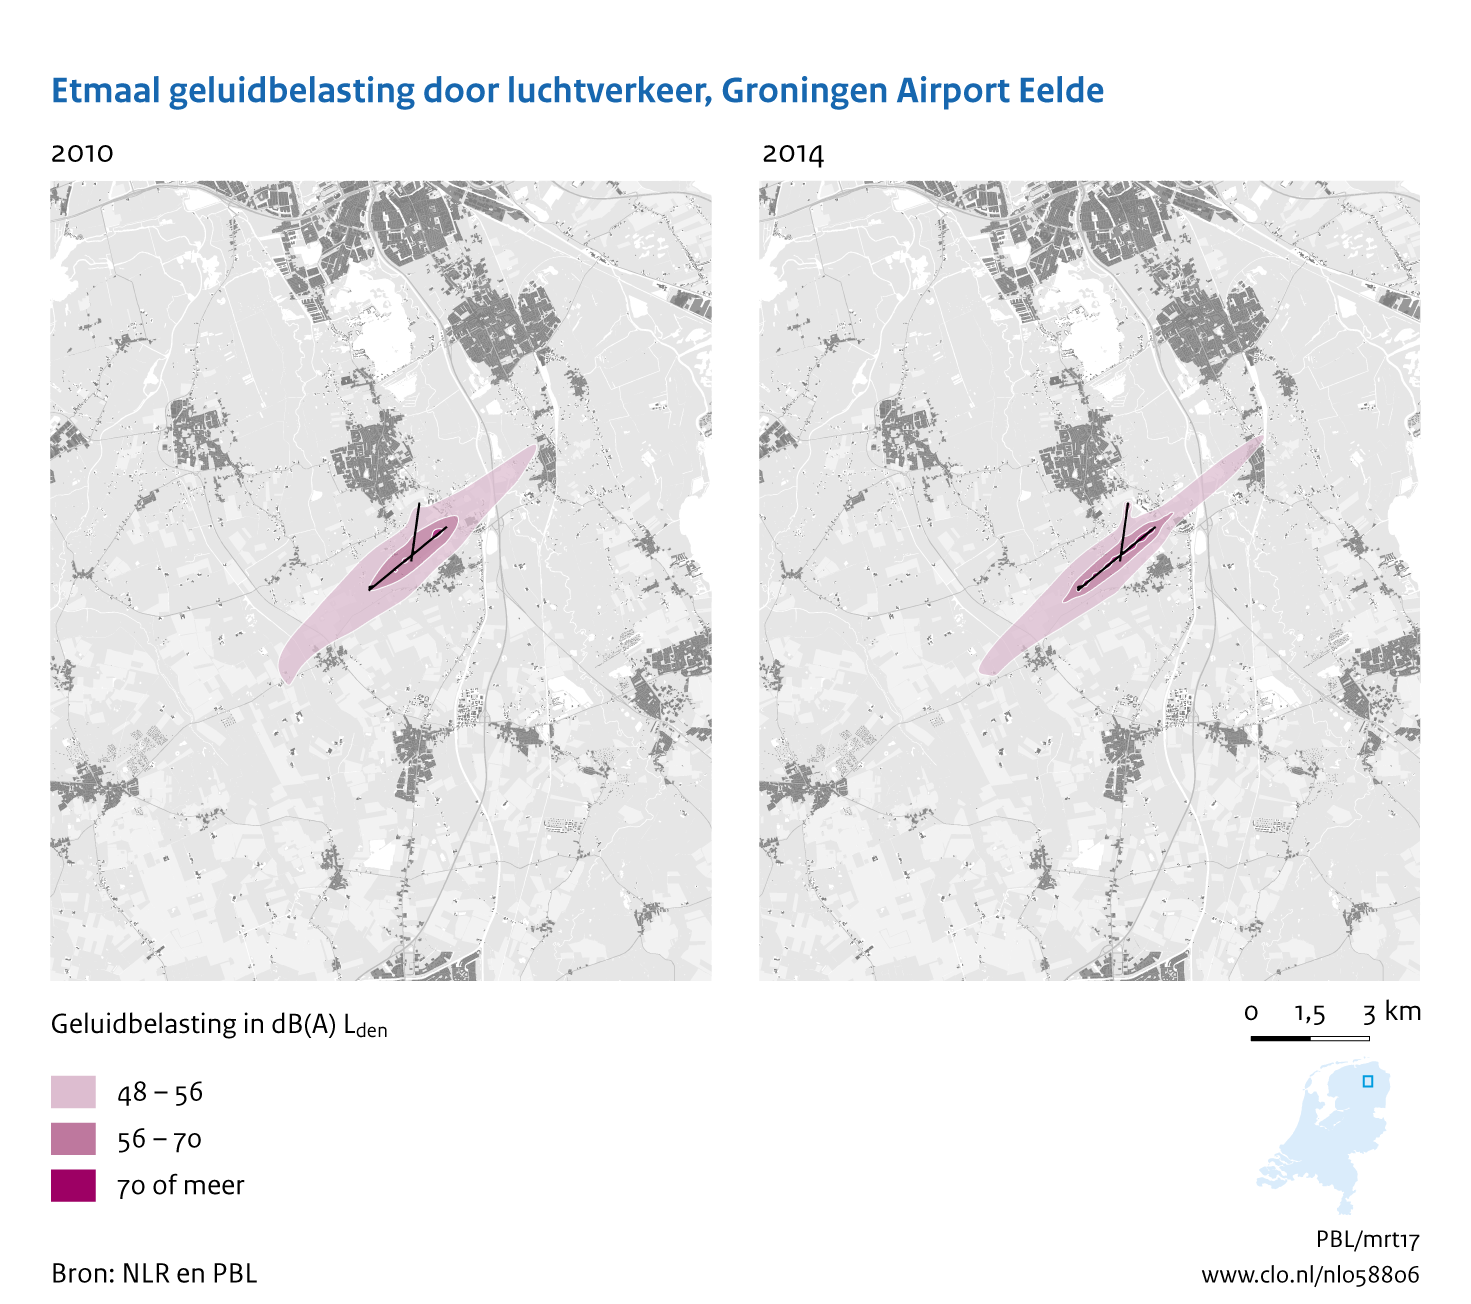 Figuur Etmaal geluidbelasting door luchtvaart, Groningen Airport Eelde, 2010-2014. In de rest van de tekst wordt deze figuur uitgebreider uitgelegd.